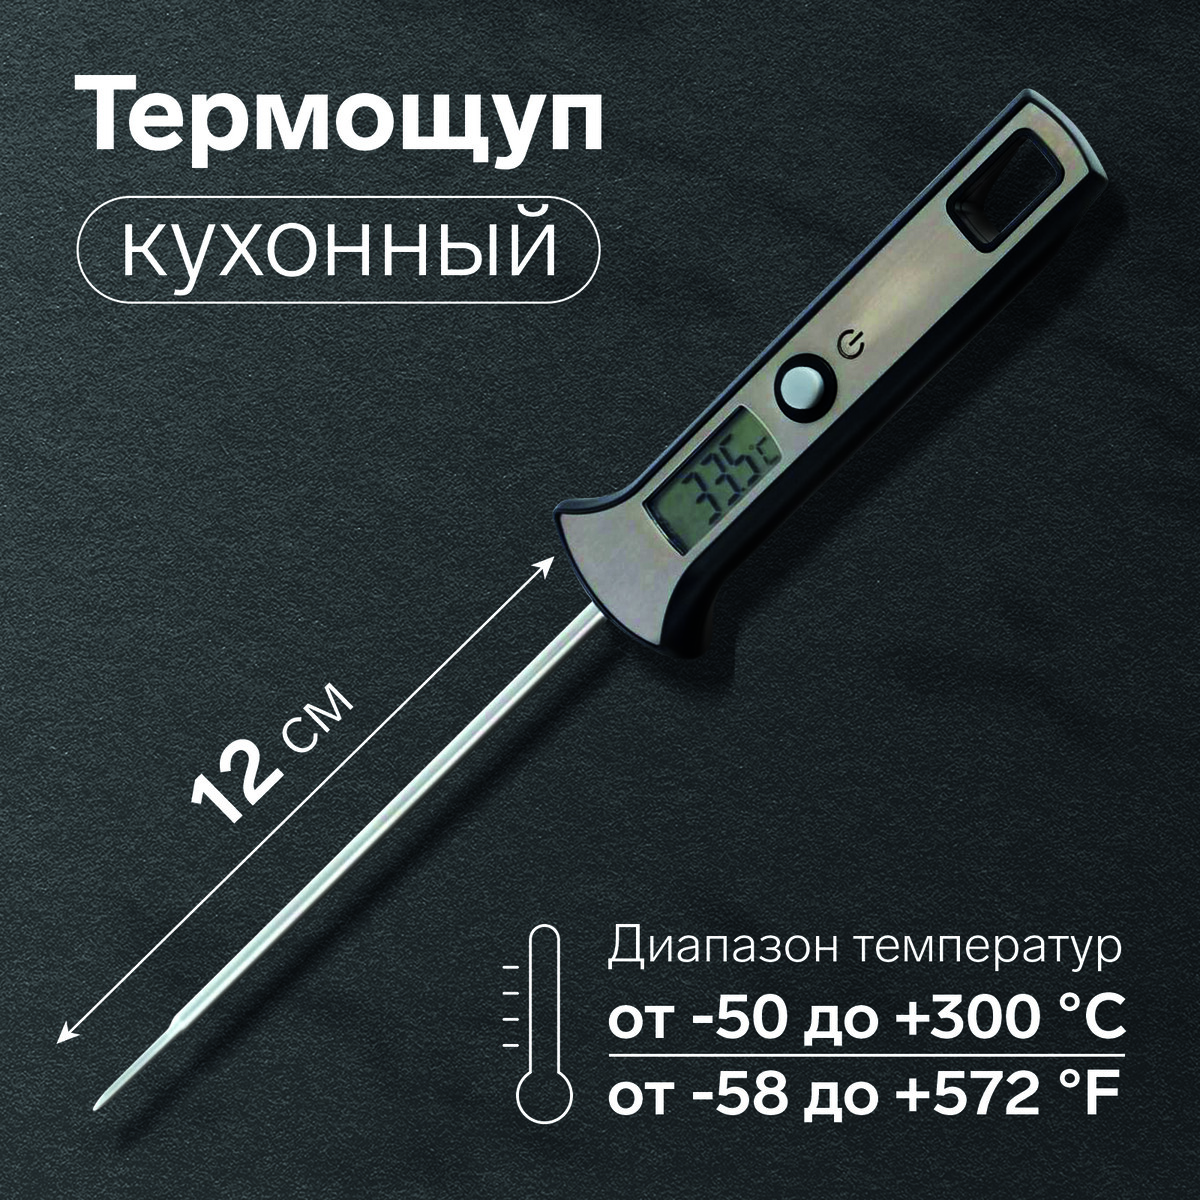 Термощуп кухонный ltr-19, максимальная температура 300 °c, от lr44, серебристый